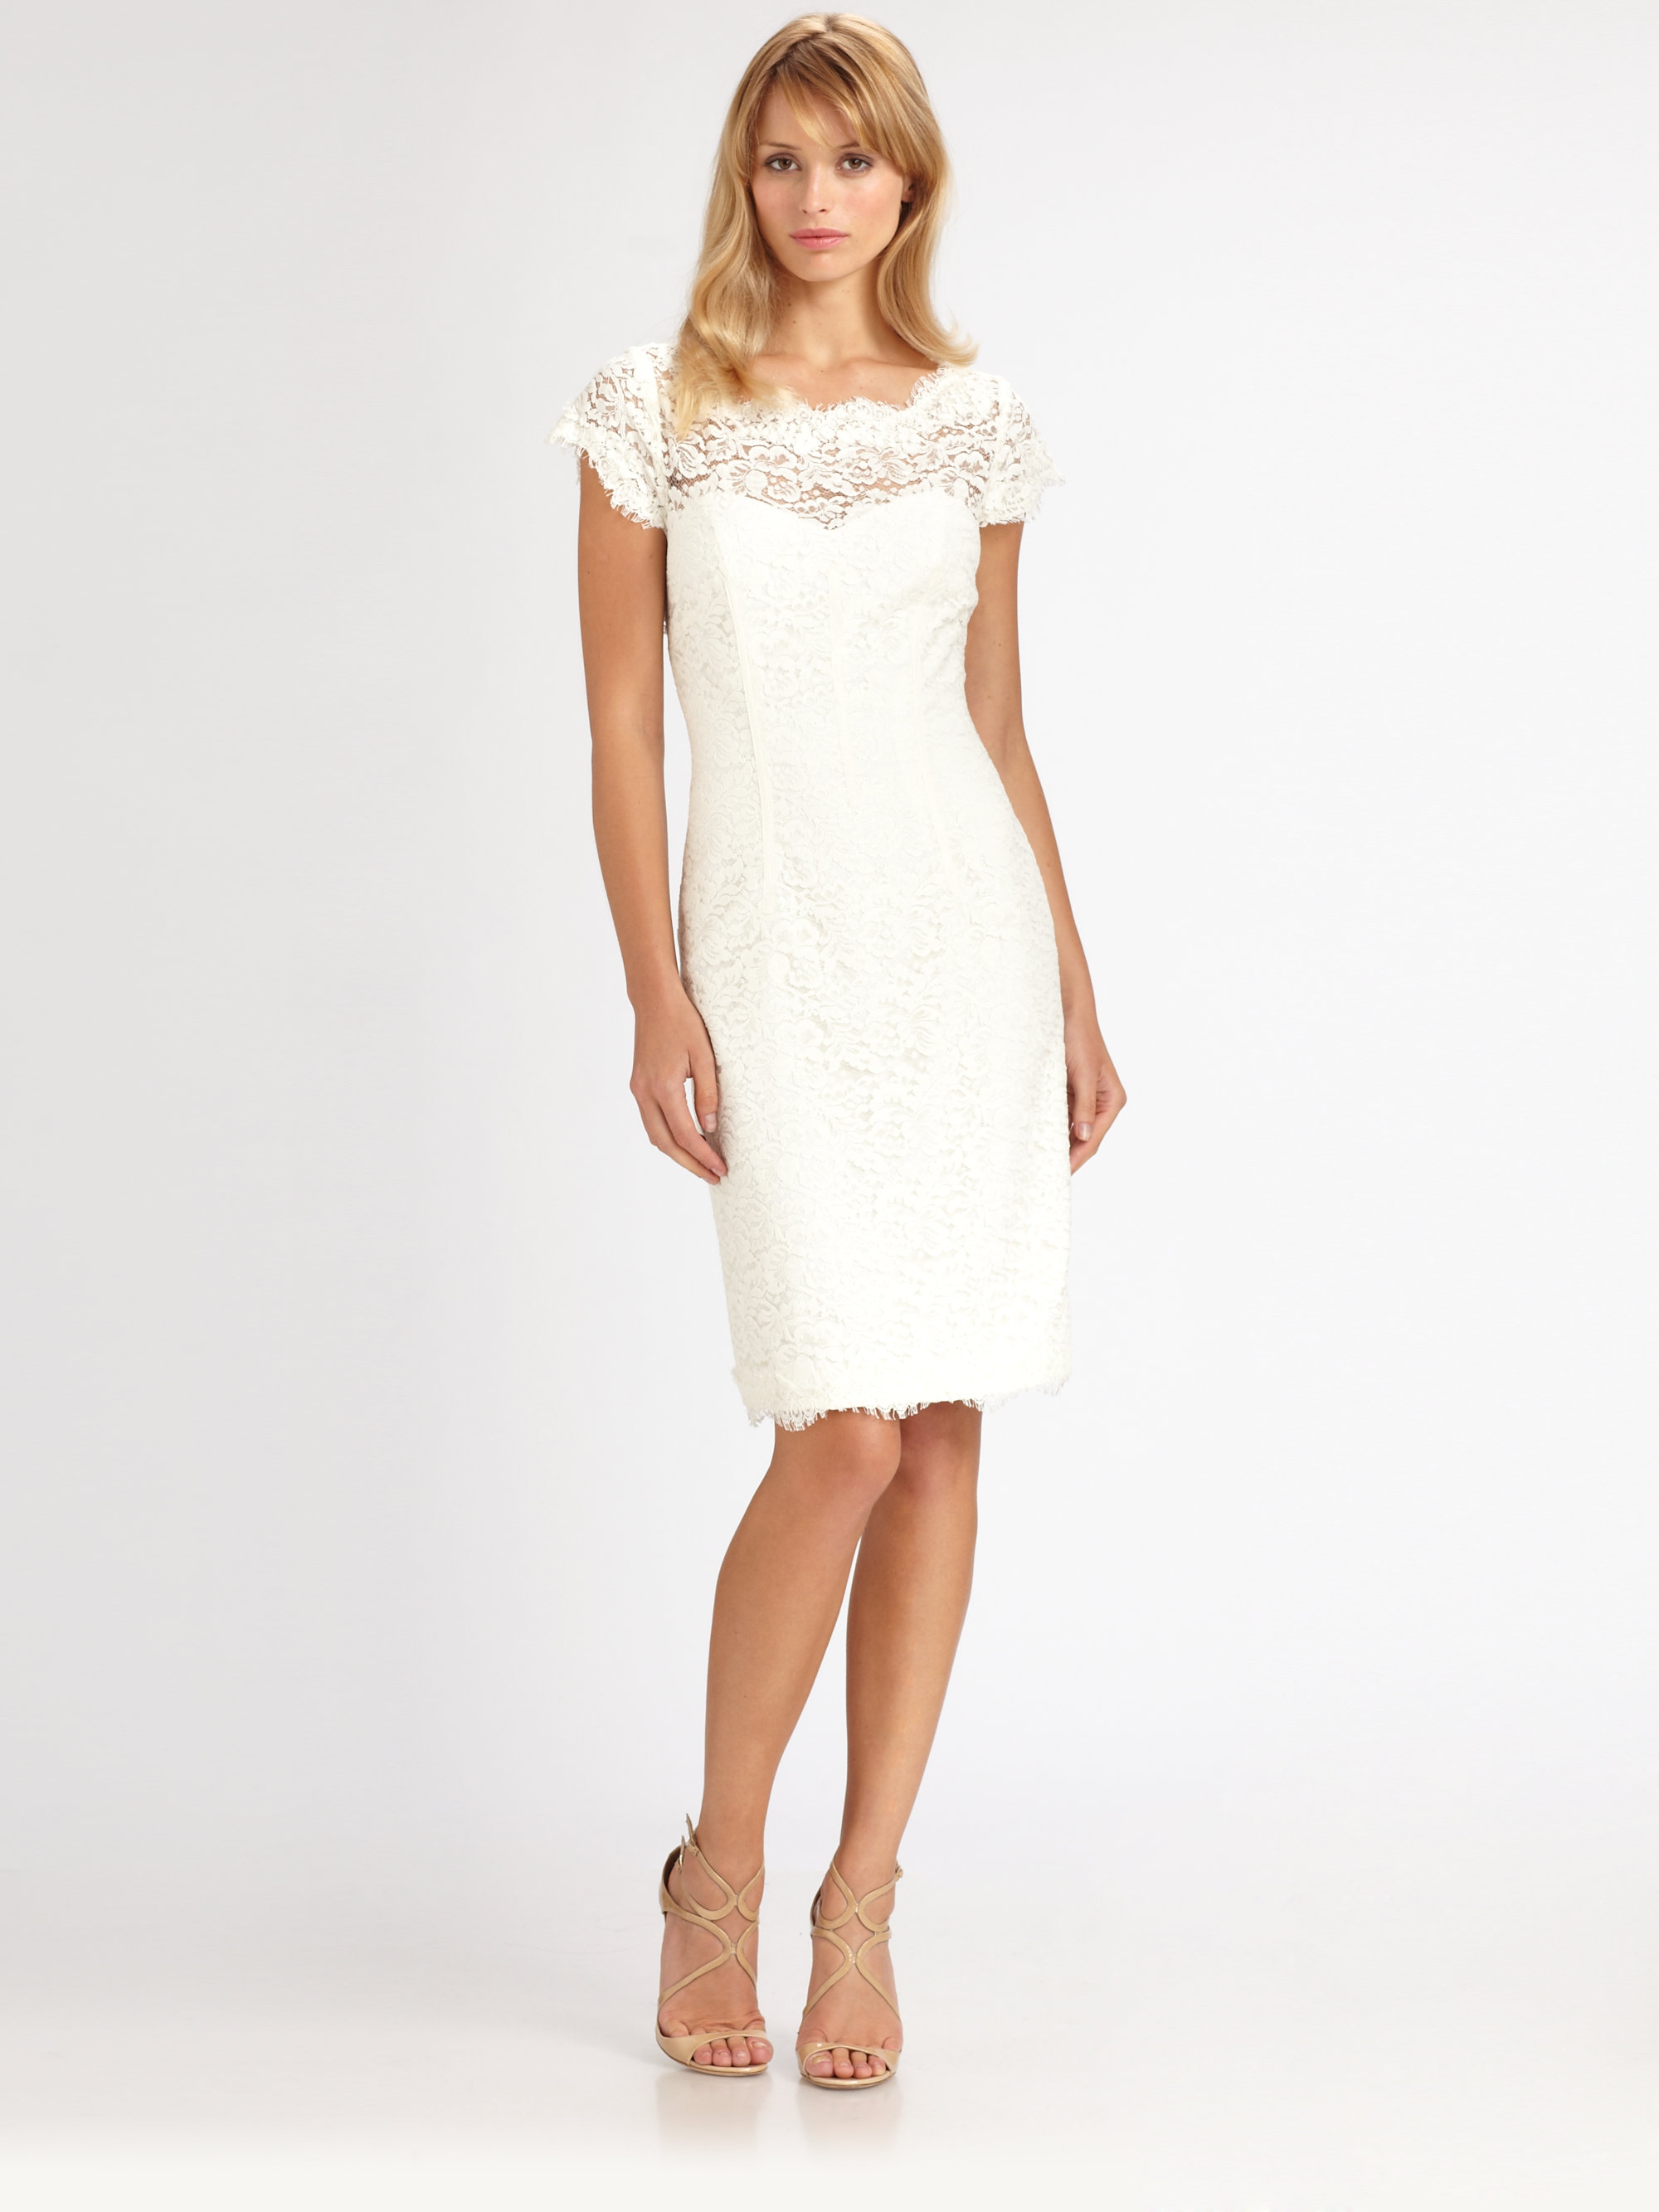 Lyst - Ml Monique Lhuillier Lace Dress in White